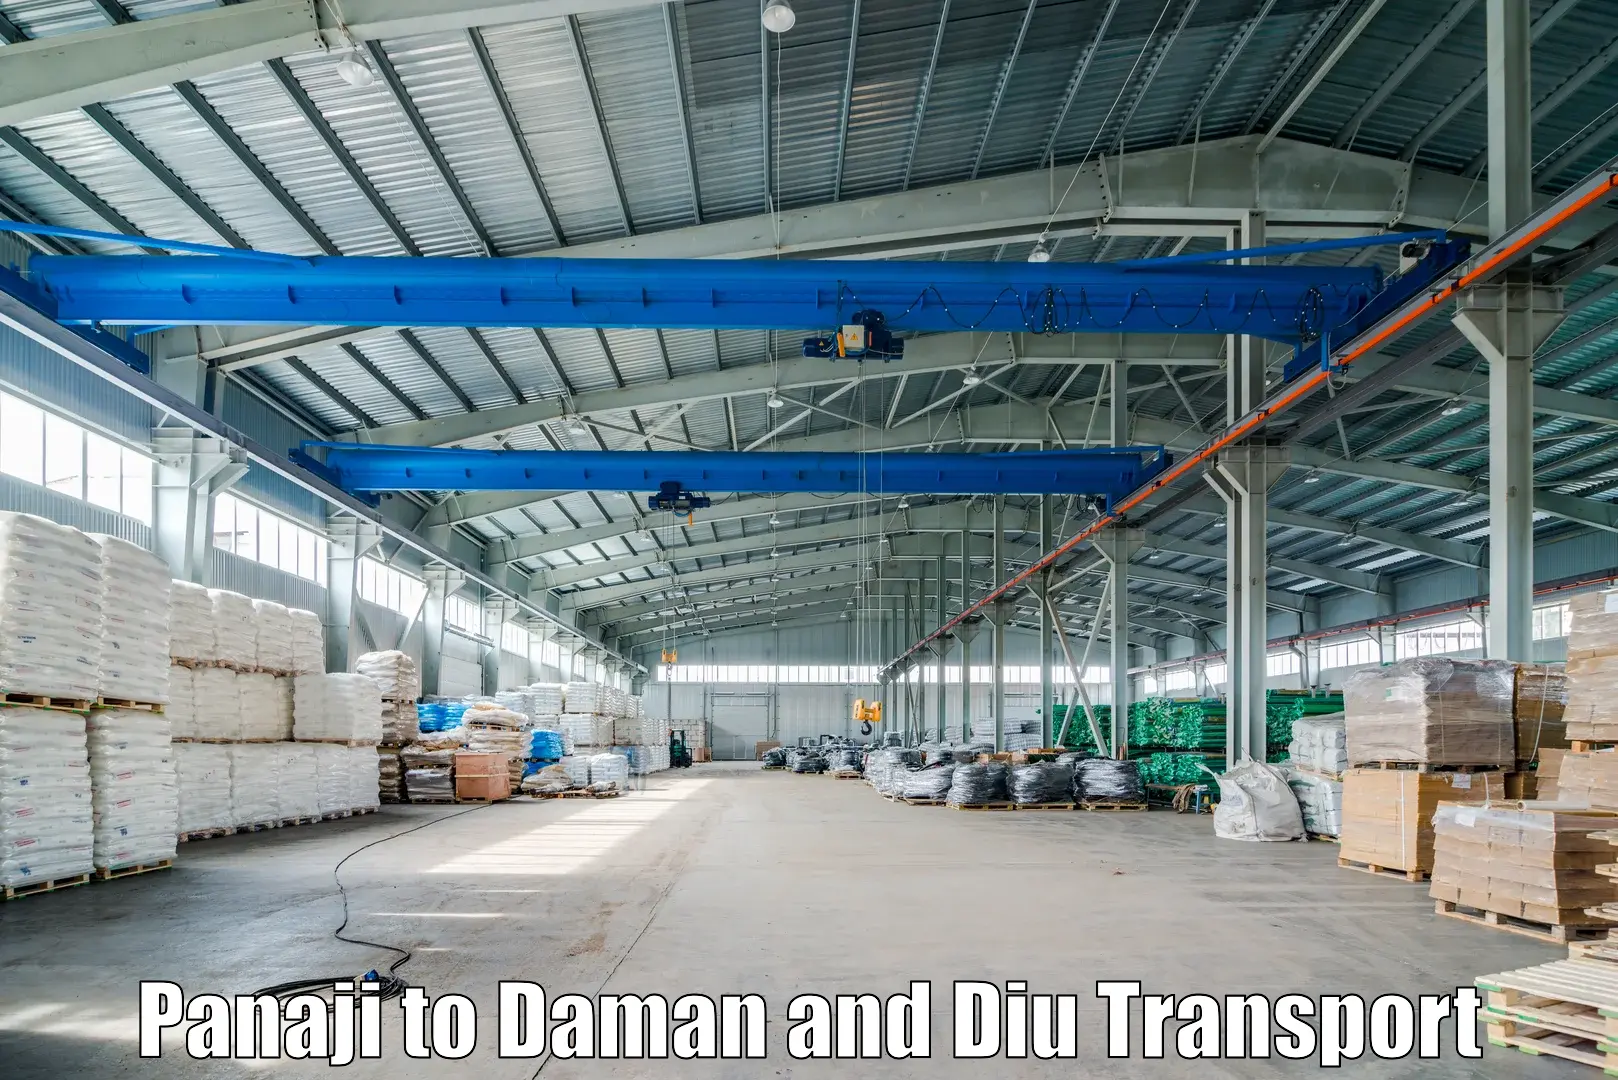 Online transport service Panaji to Daman and Diu